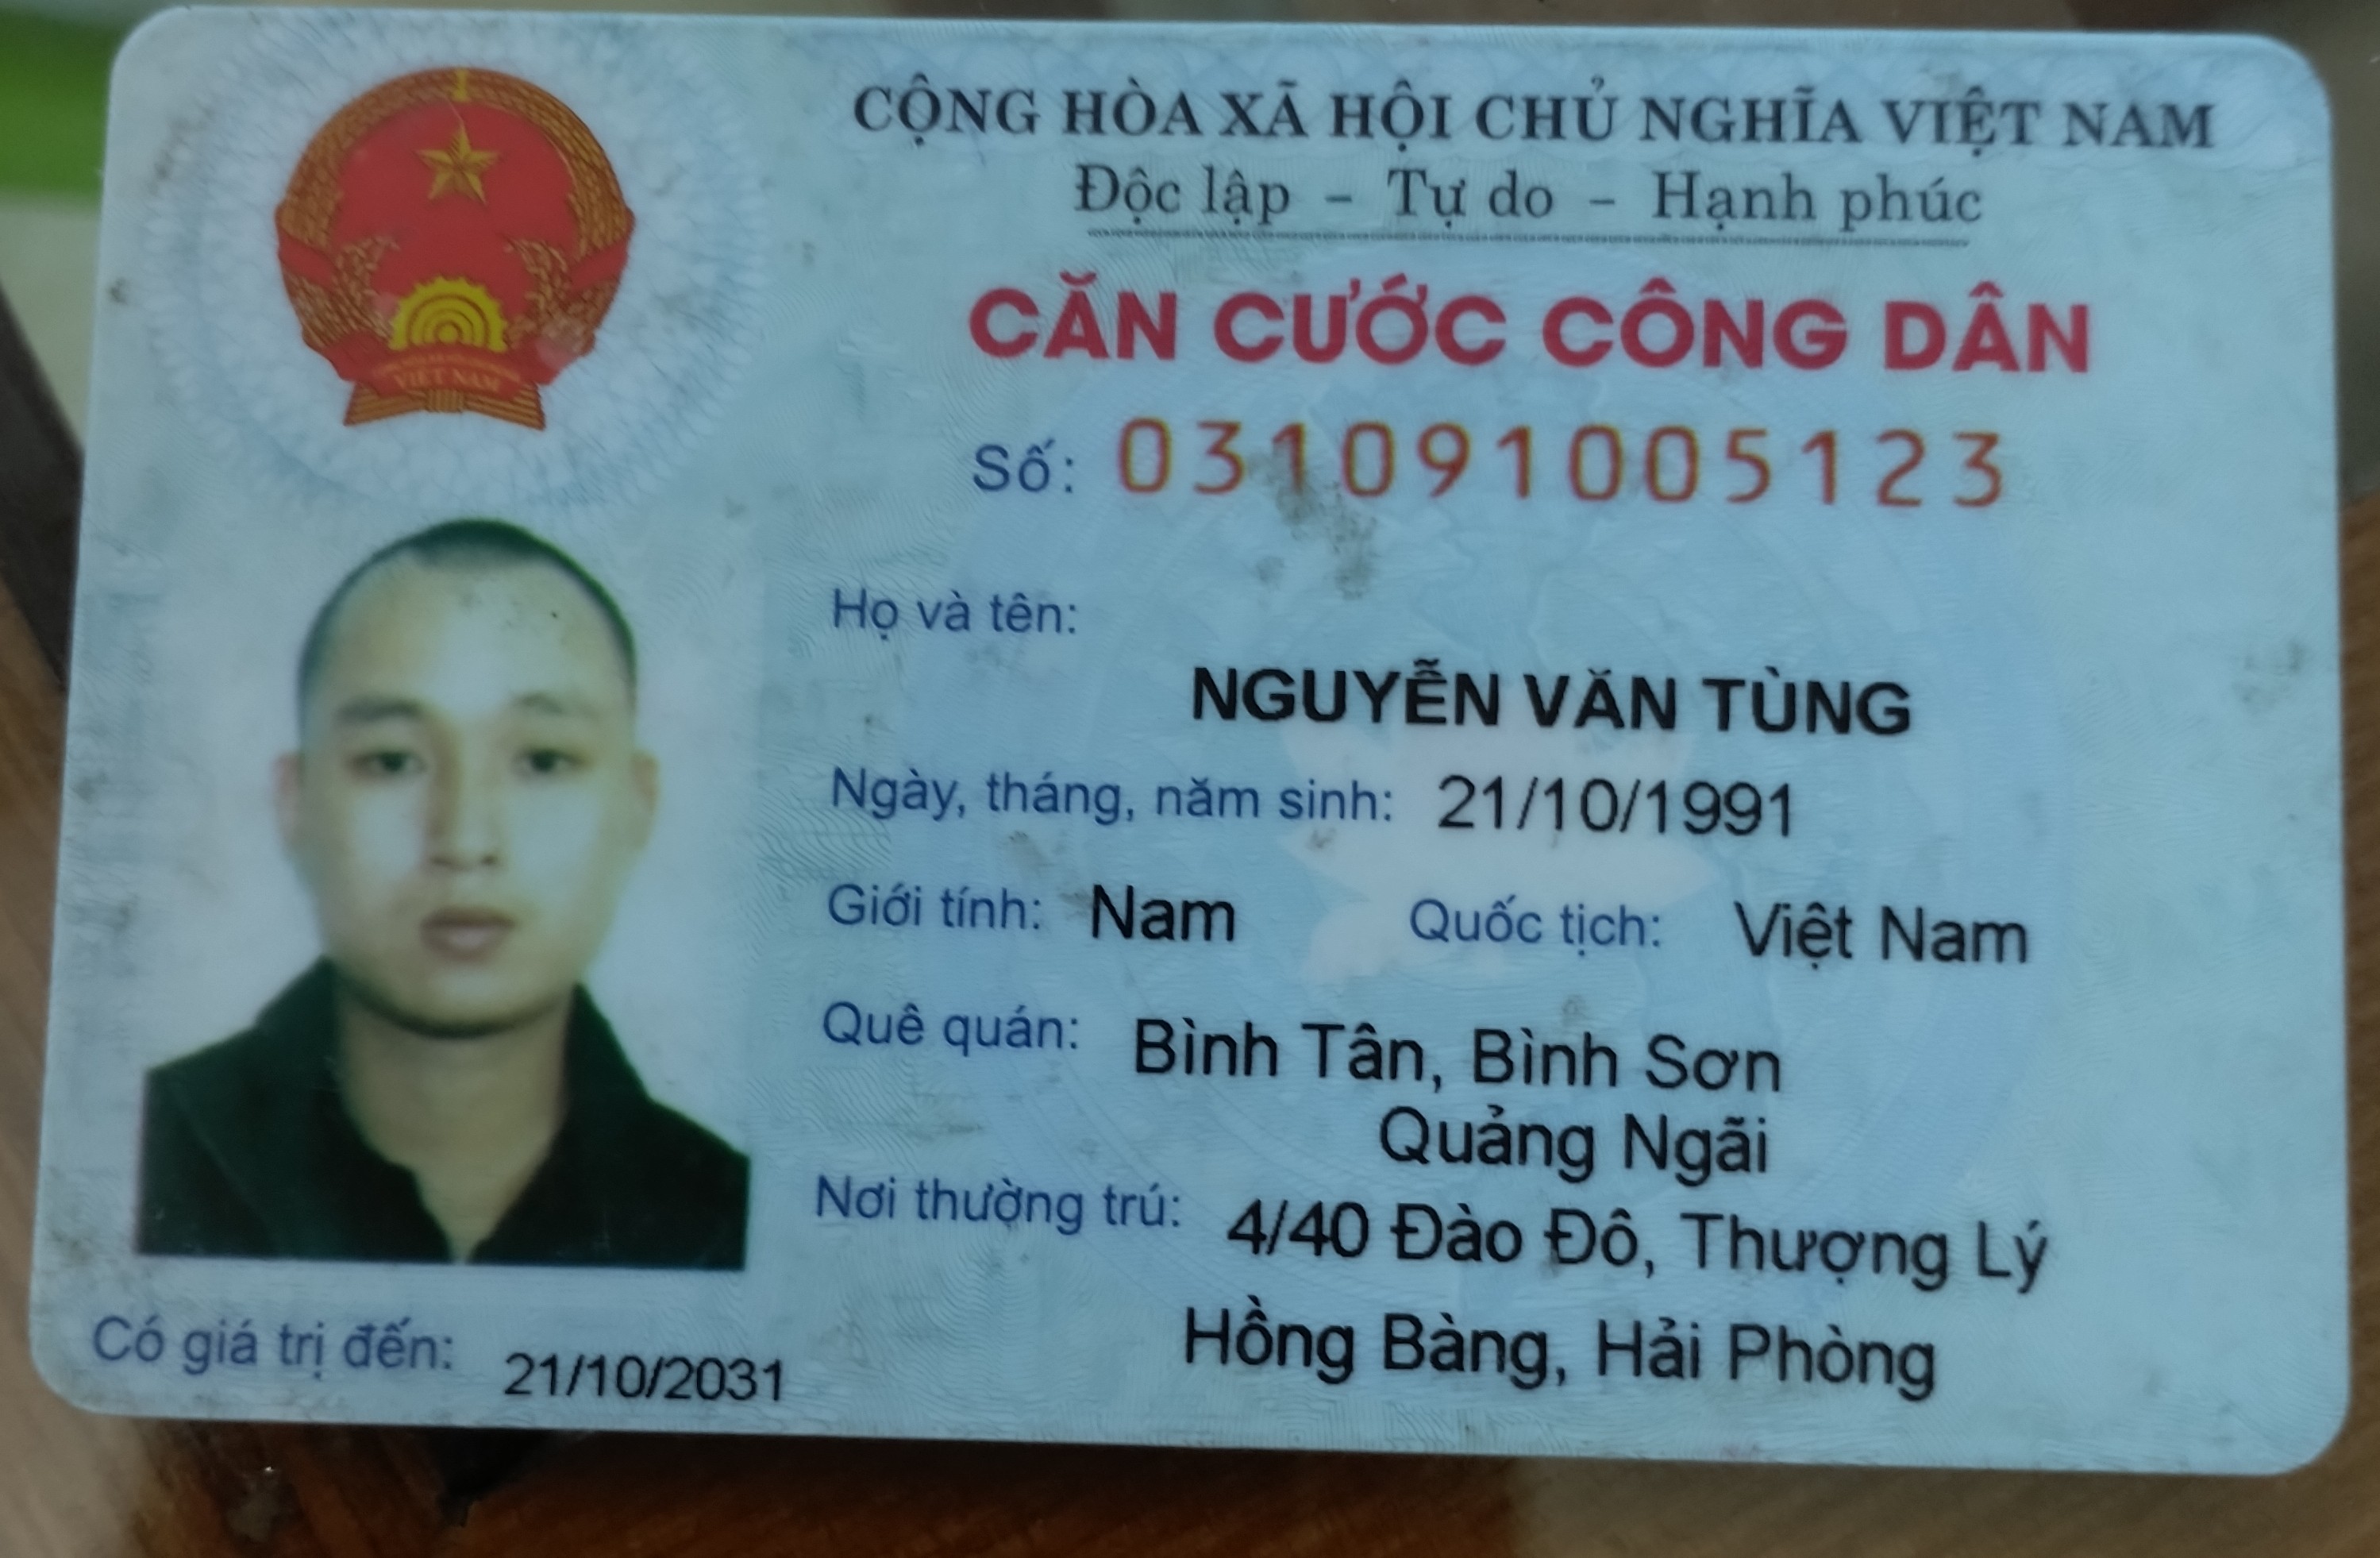 Hồ Sơ Online Nguyễn Văn Tùng: Nhân Viên, Xin Việc - Hoteljob.Vn